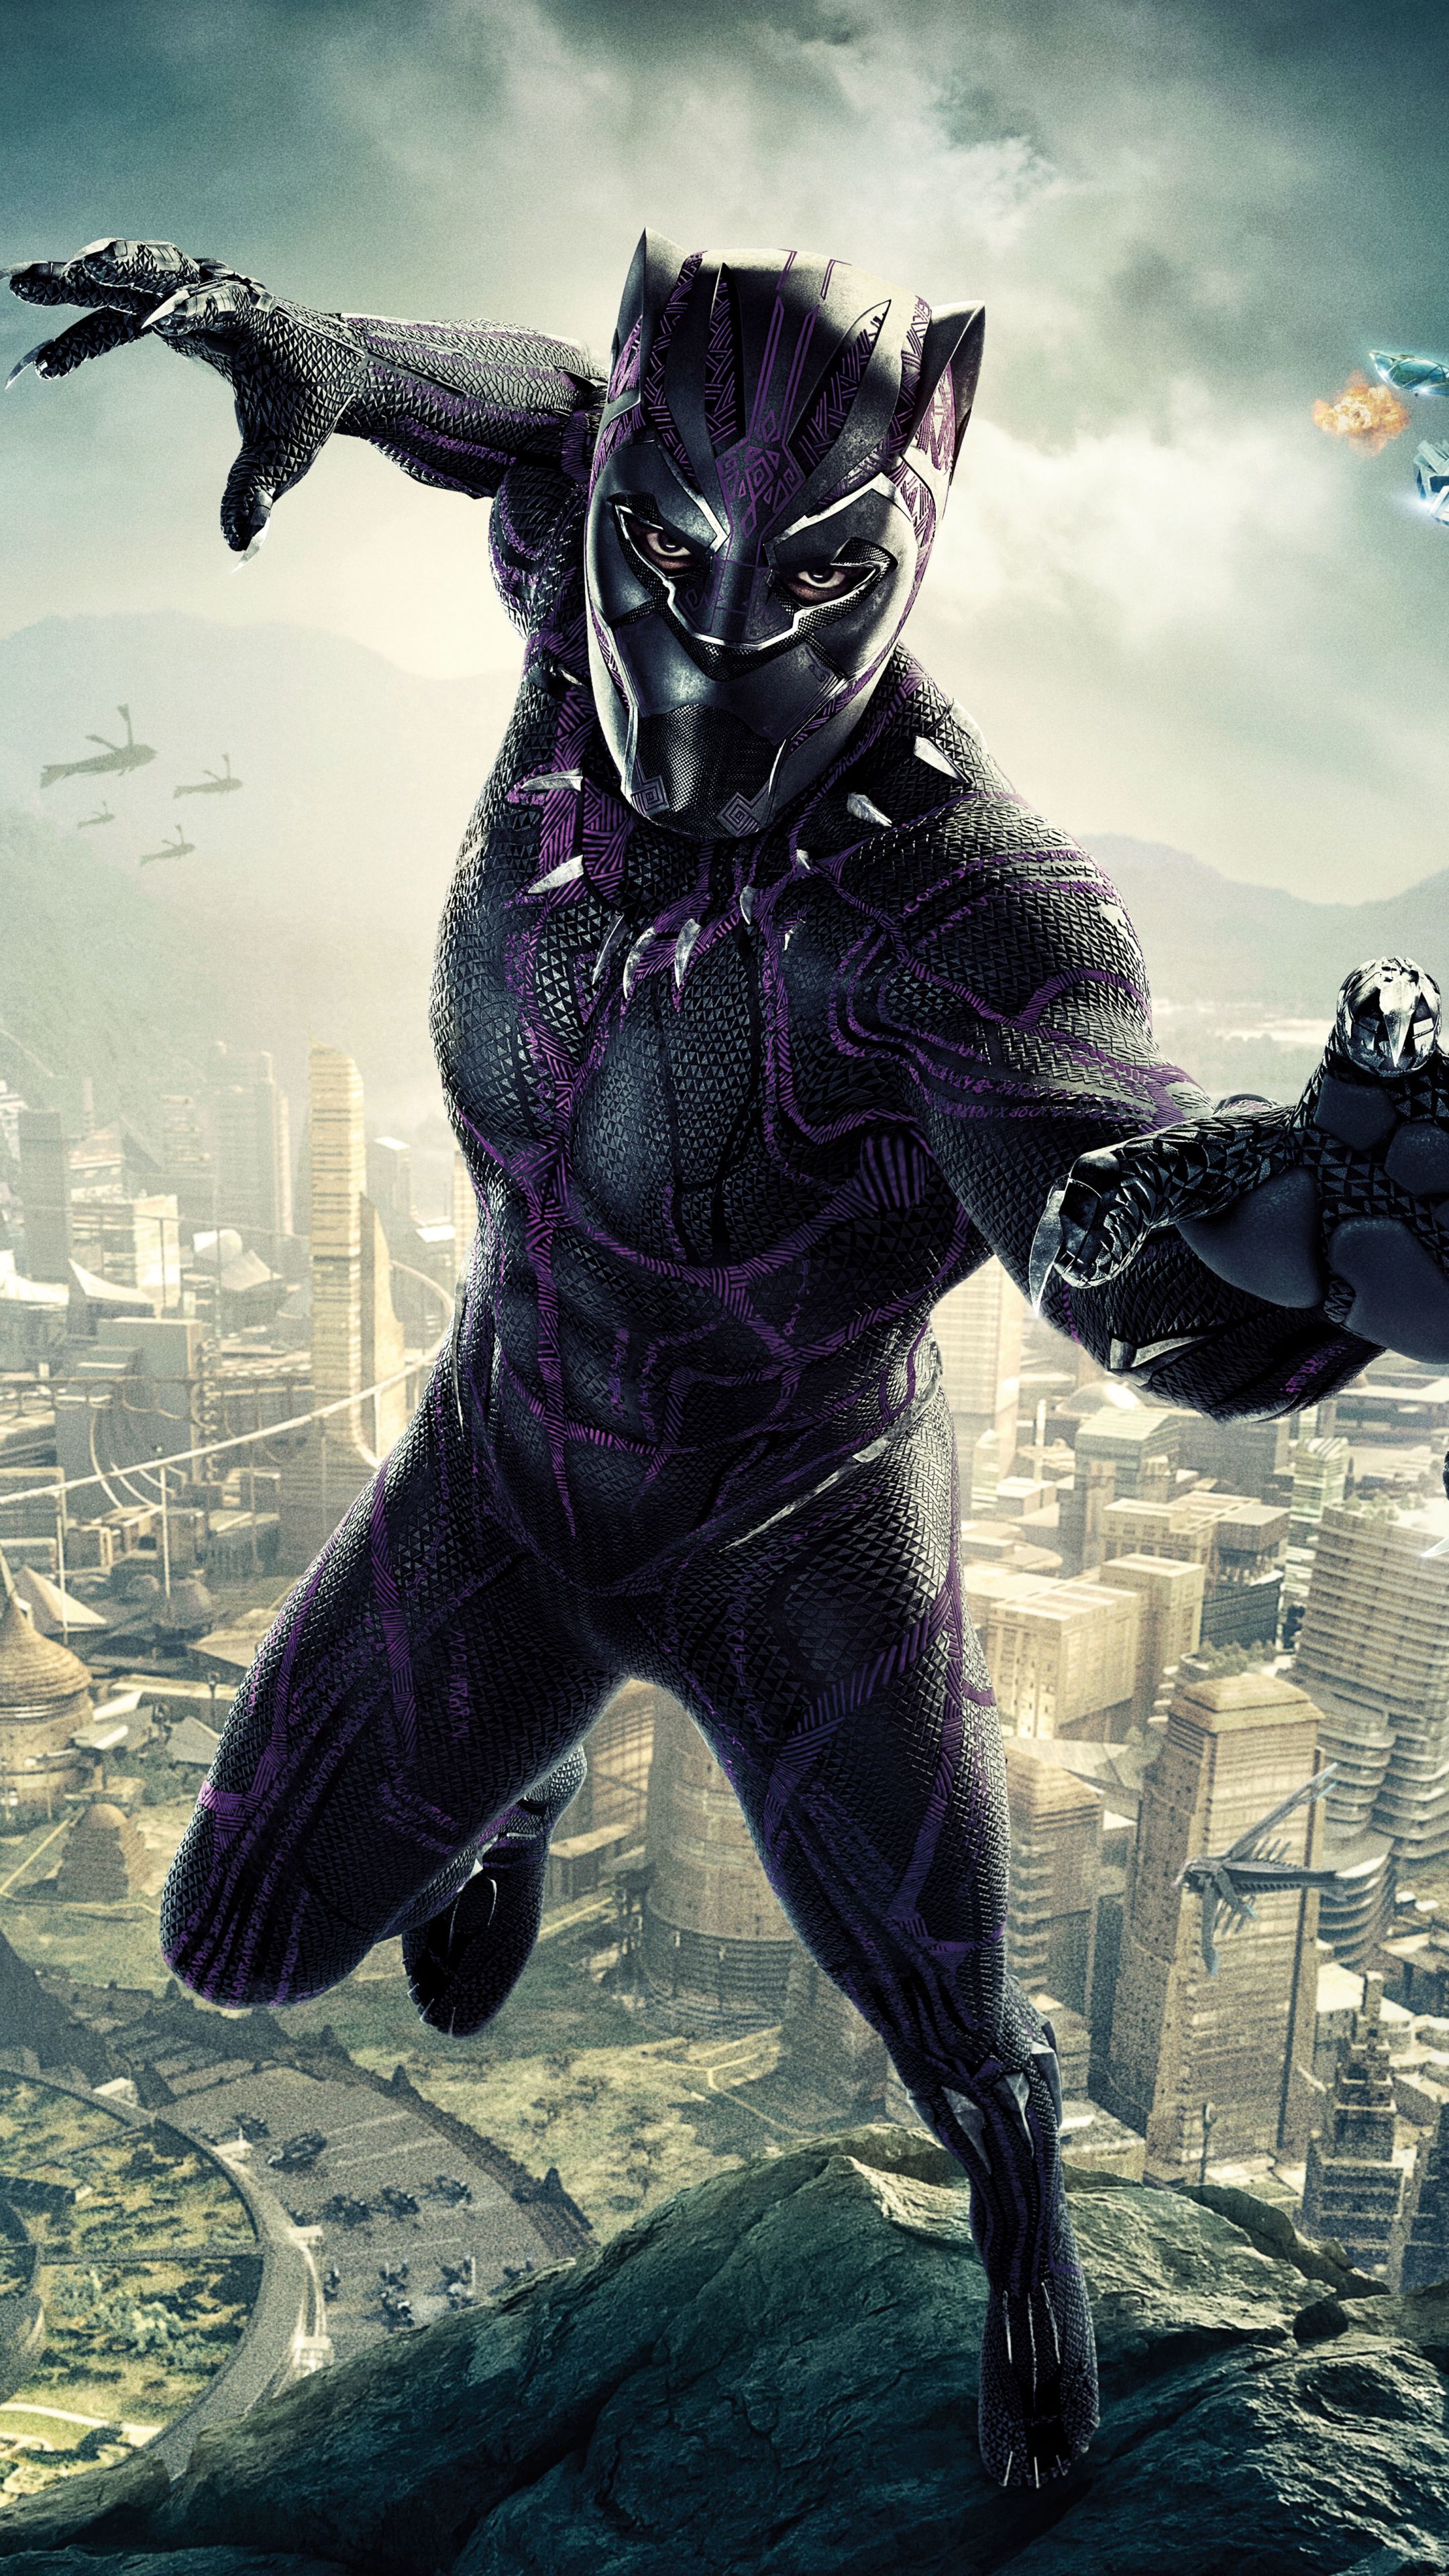 Black Panther HD Wallpapers Free download  PixelsTalkNet